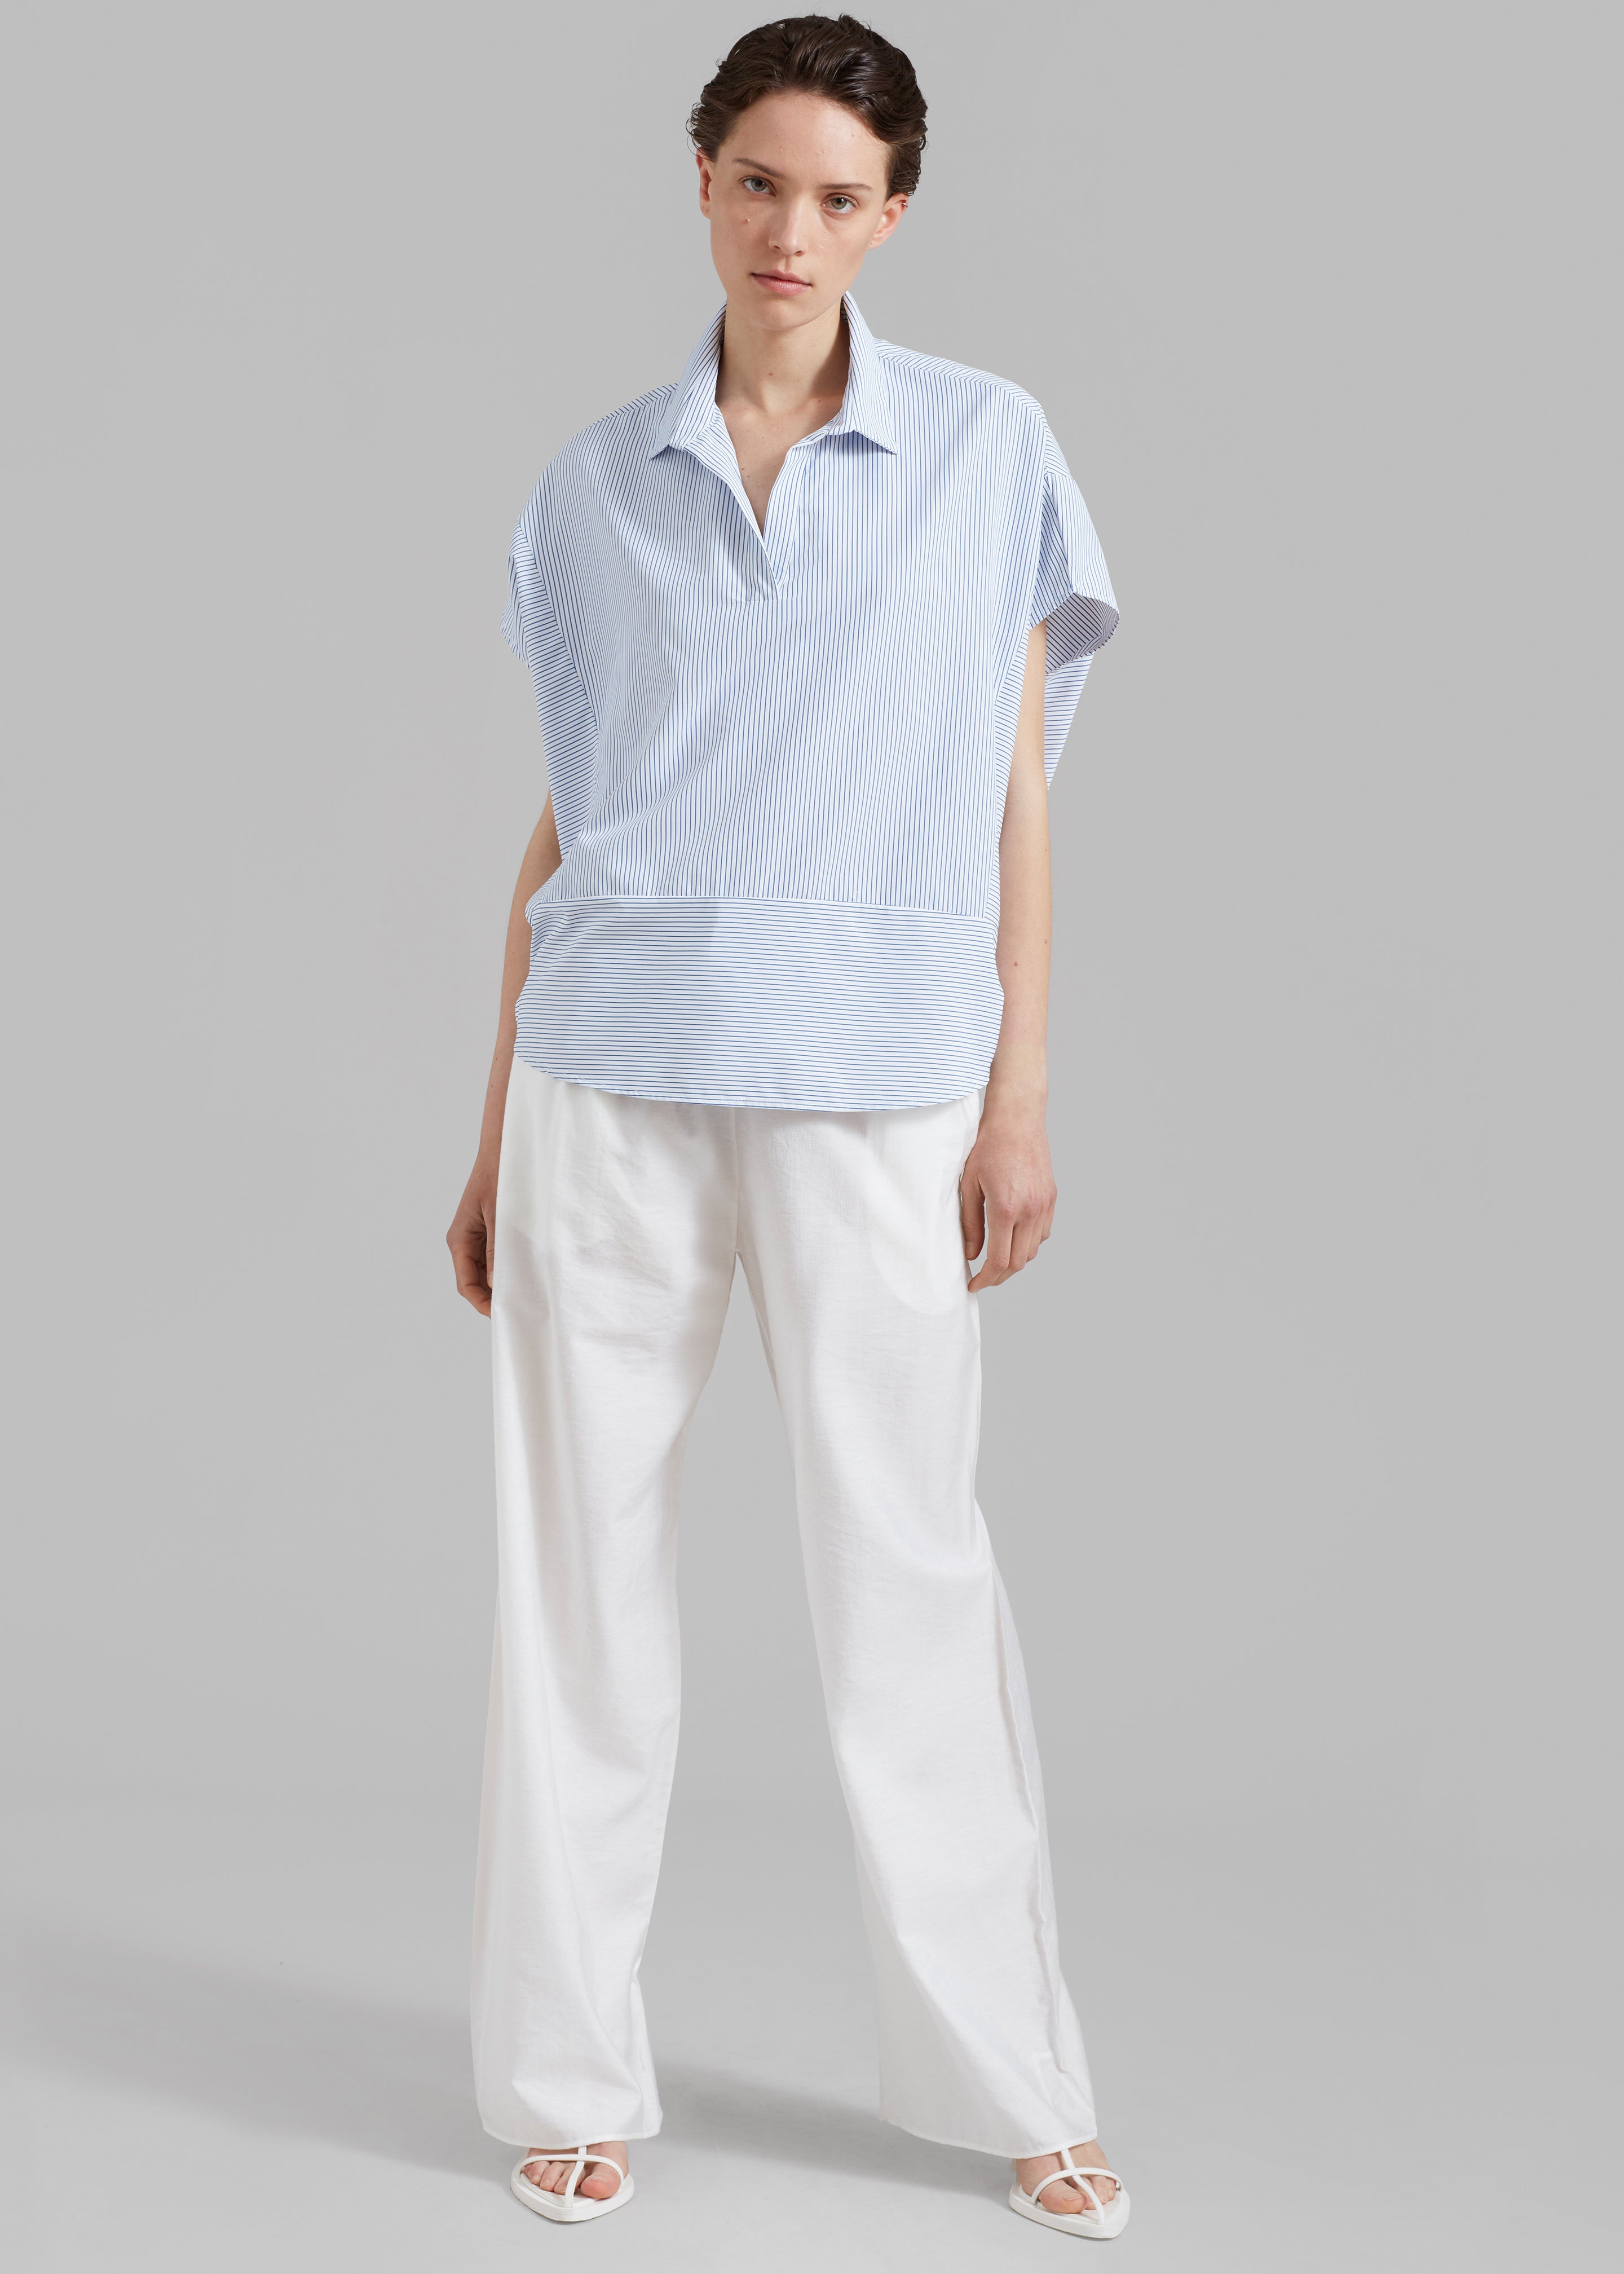 Flora Dolman Shirt - Blue Stripe - 5